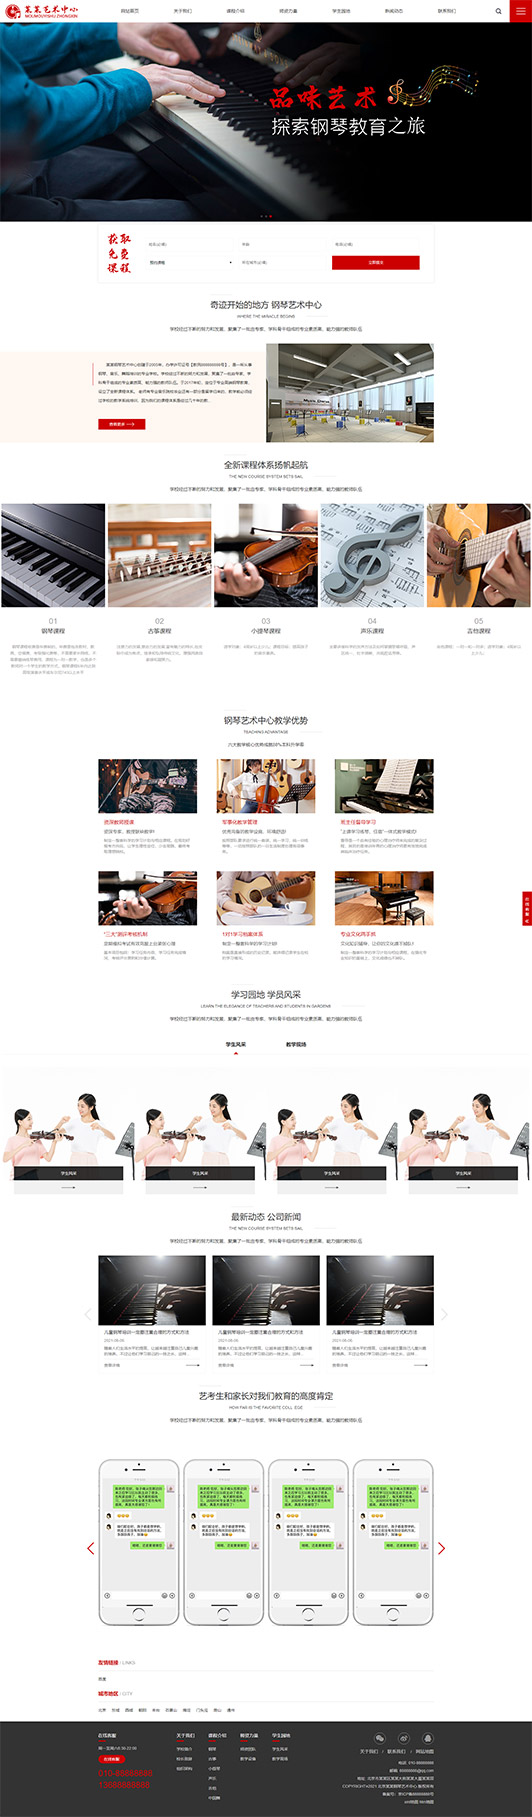 莆田钢琴艺术培训公司响应式企业网站